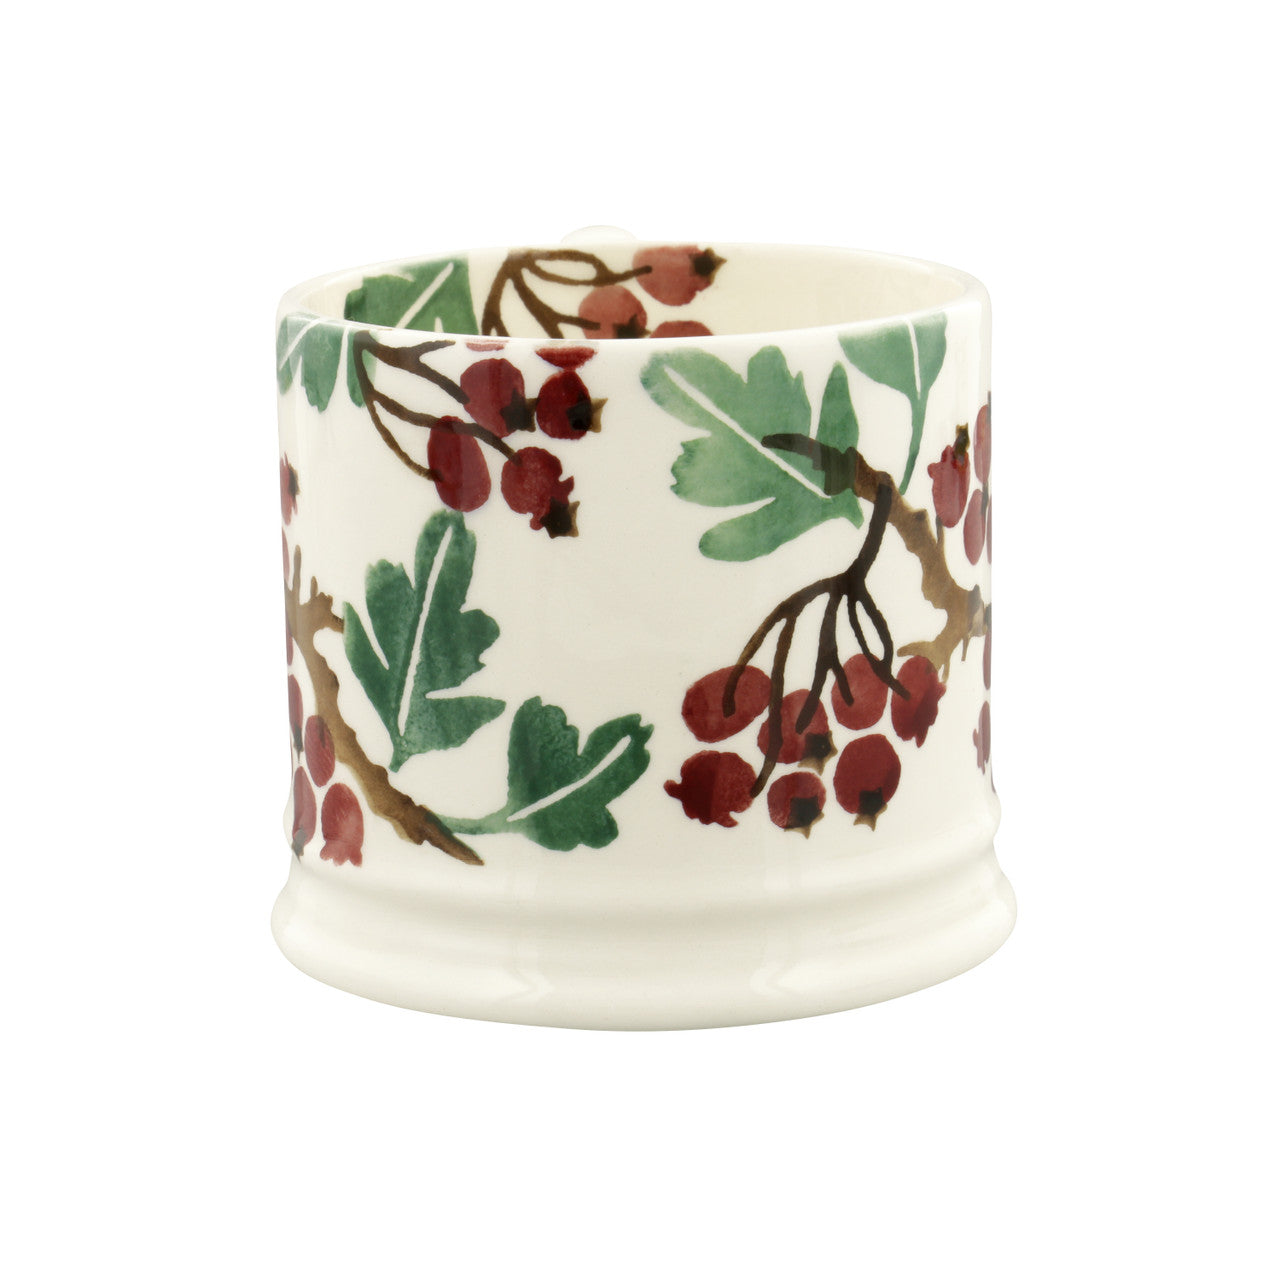 Hand made small Hawthorn Berries  mug from Emma Bridgewater